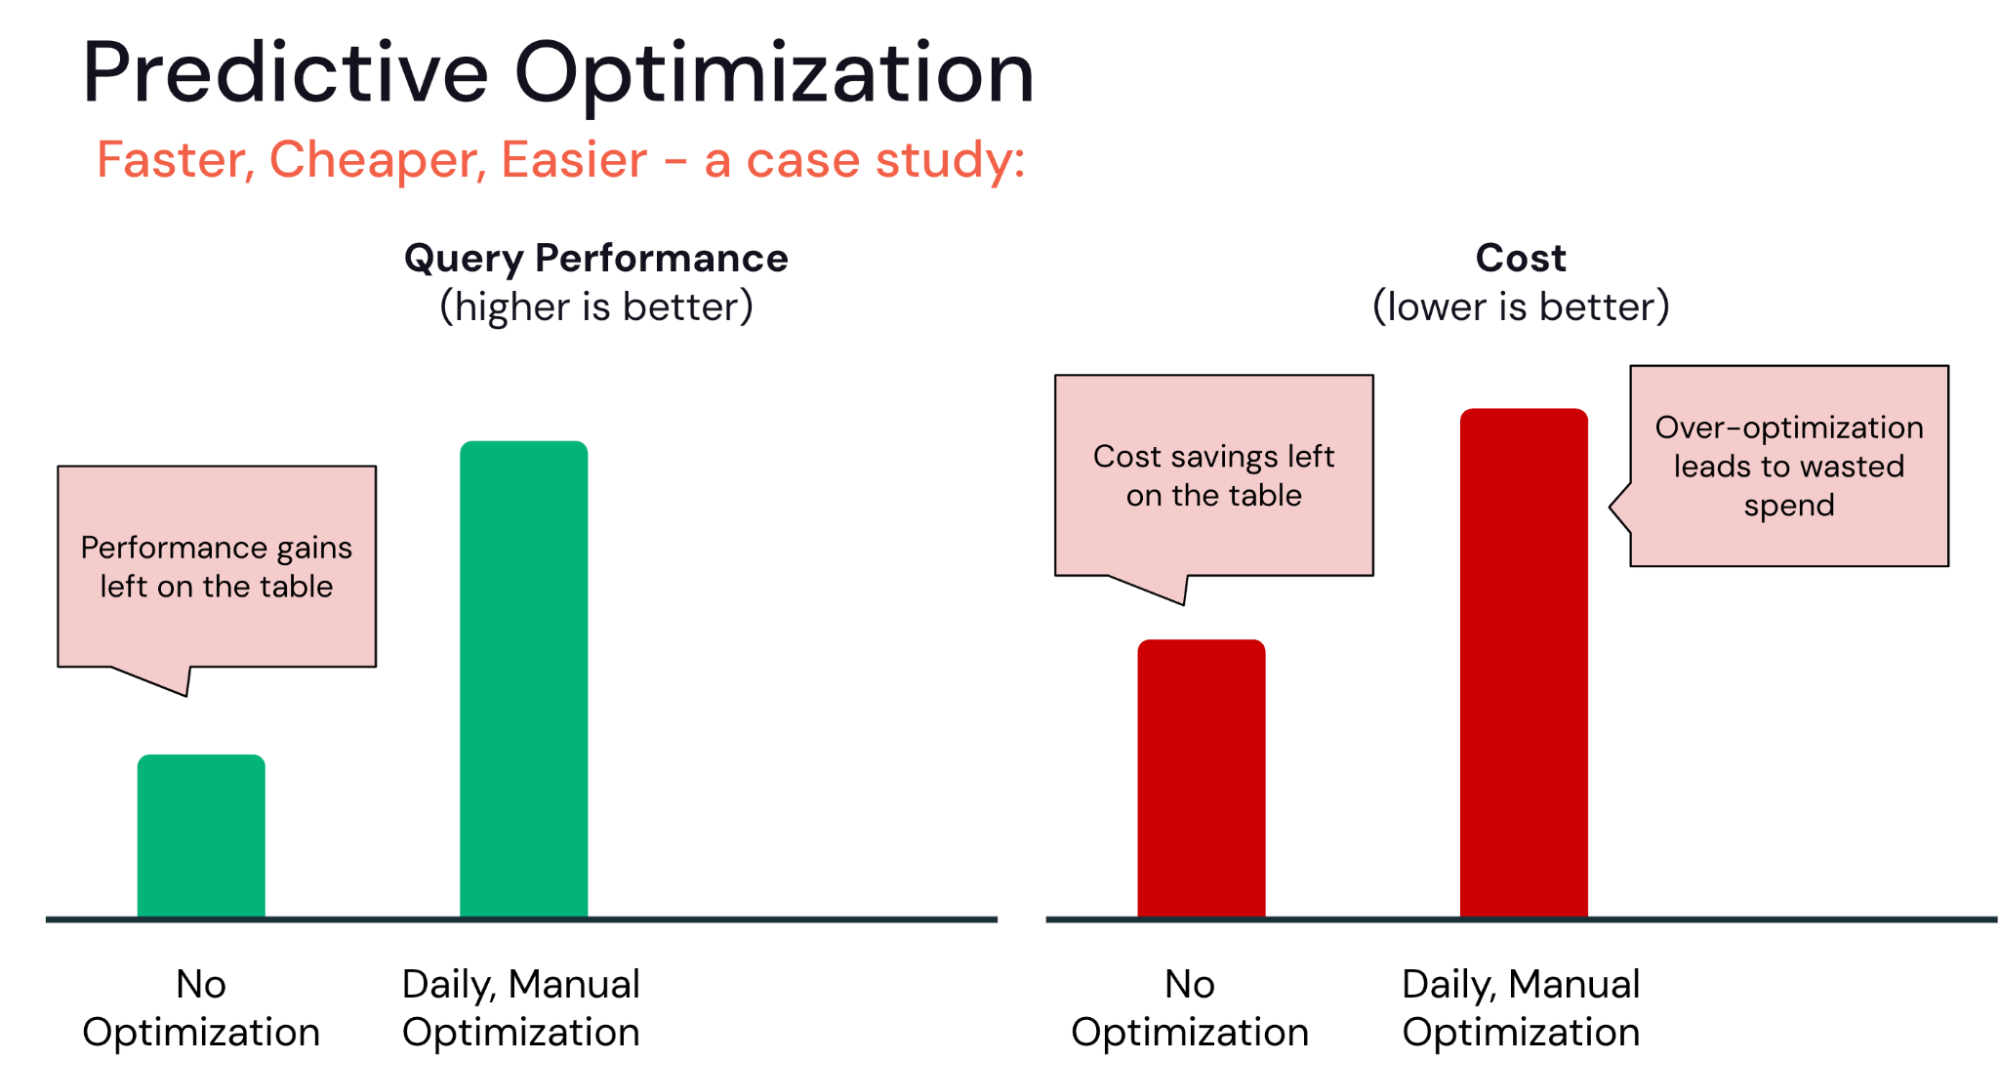 Les images côte à côte montrent les compromis entre les performances des requêtes et le coût entre aucune optimisation et des optimisations manuelles quotidiennes.